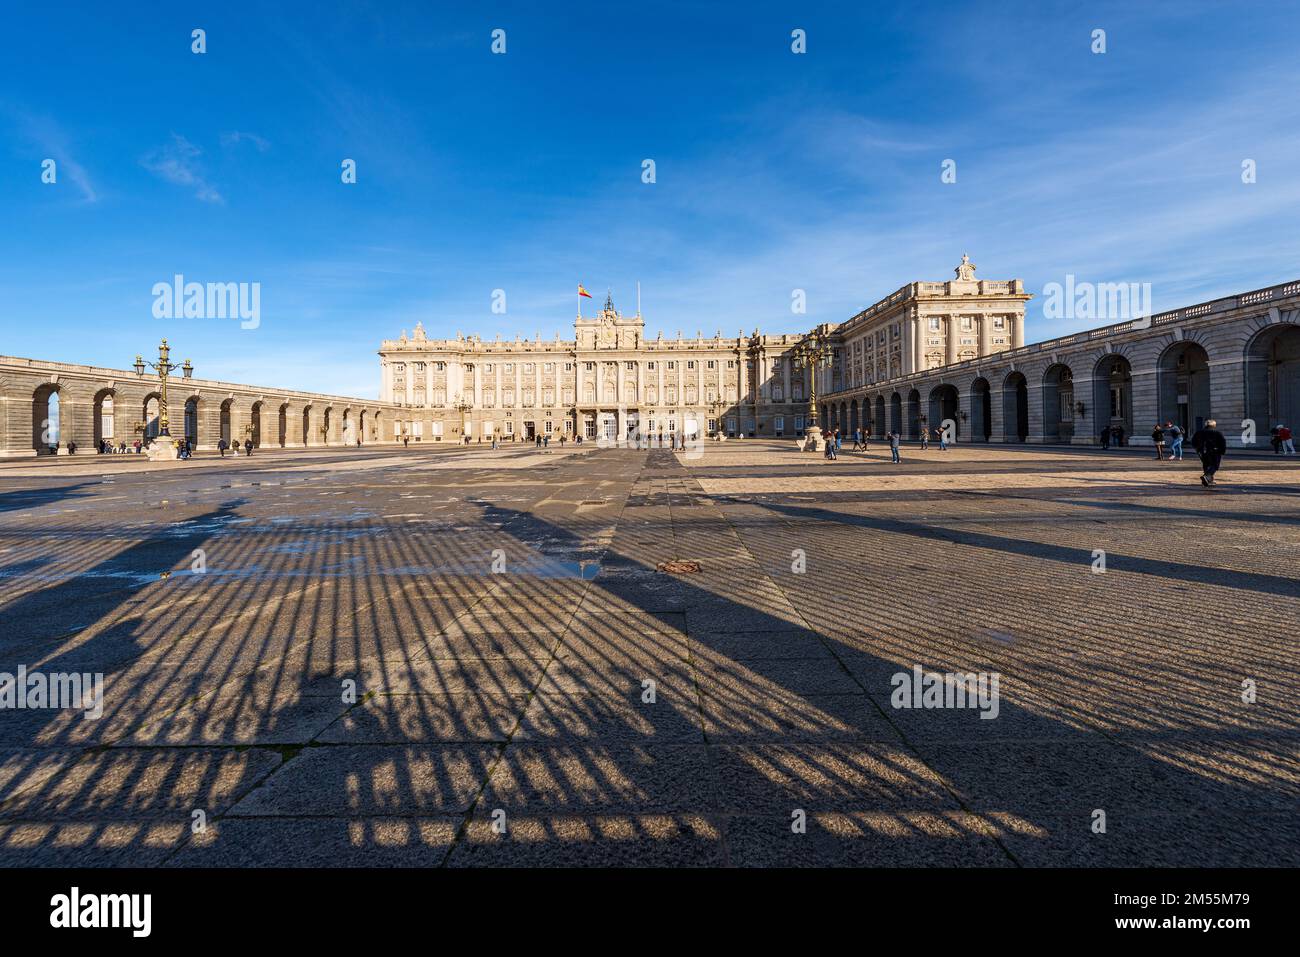 Facciata principale del Palazzo reale di Madrid in stile barocco, in passato utilizzata come residenza del re di Spagna, Plaza de la Armeria, Spagna, Europa. Foto Stock